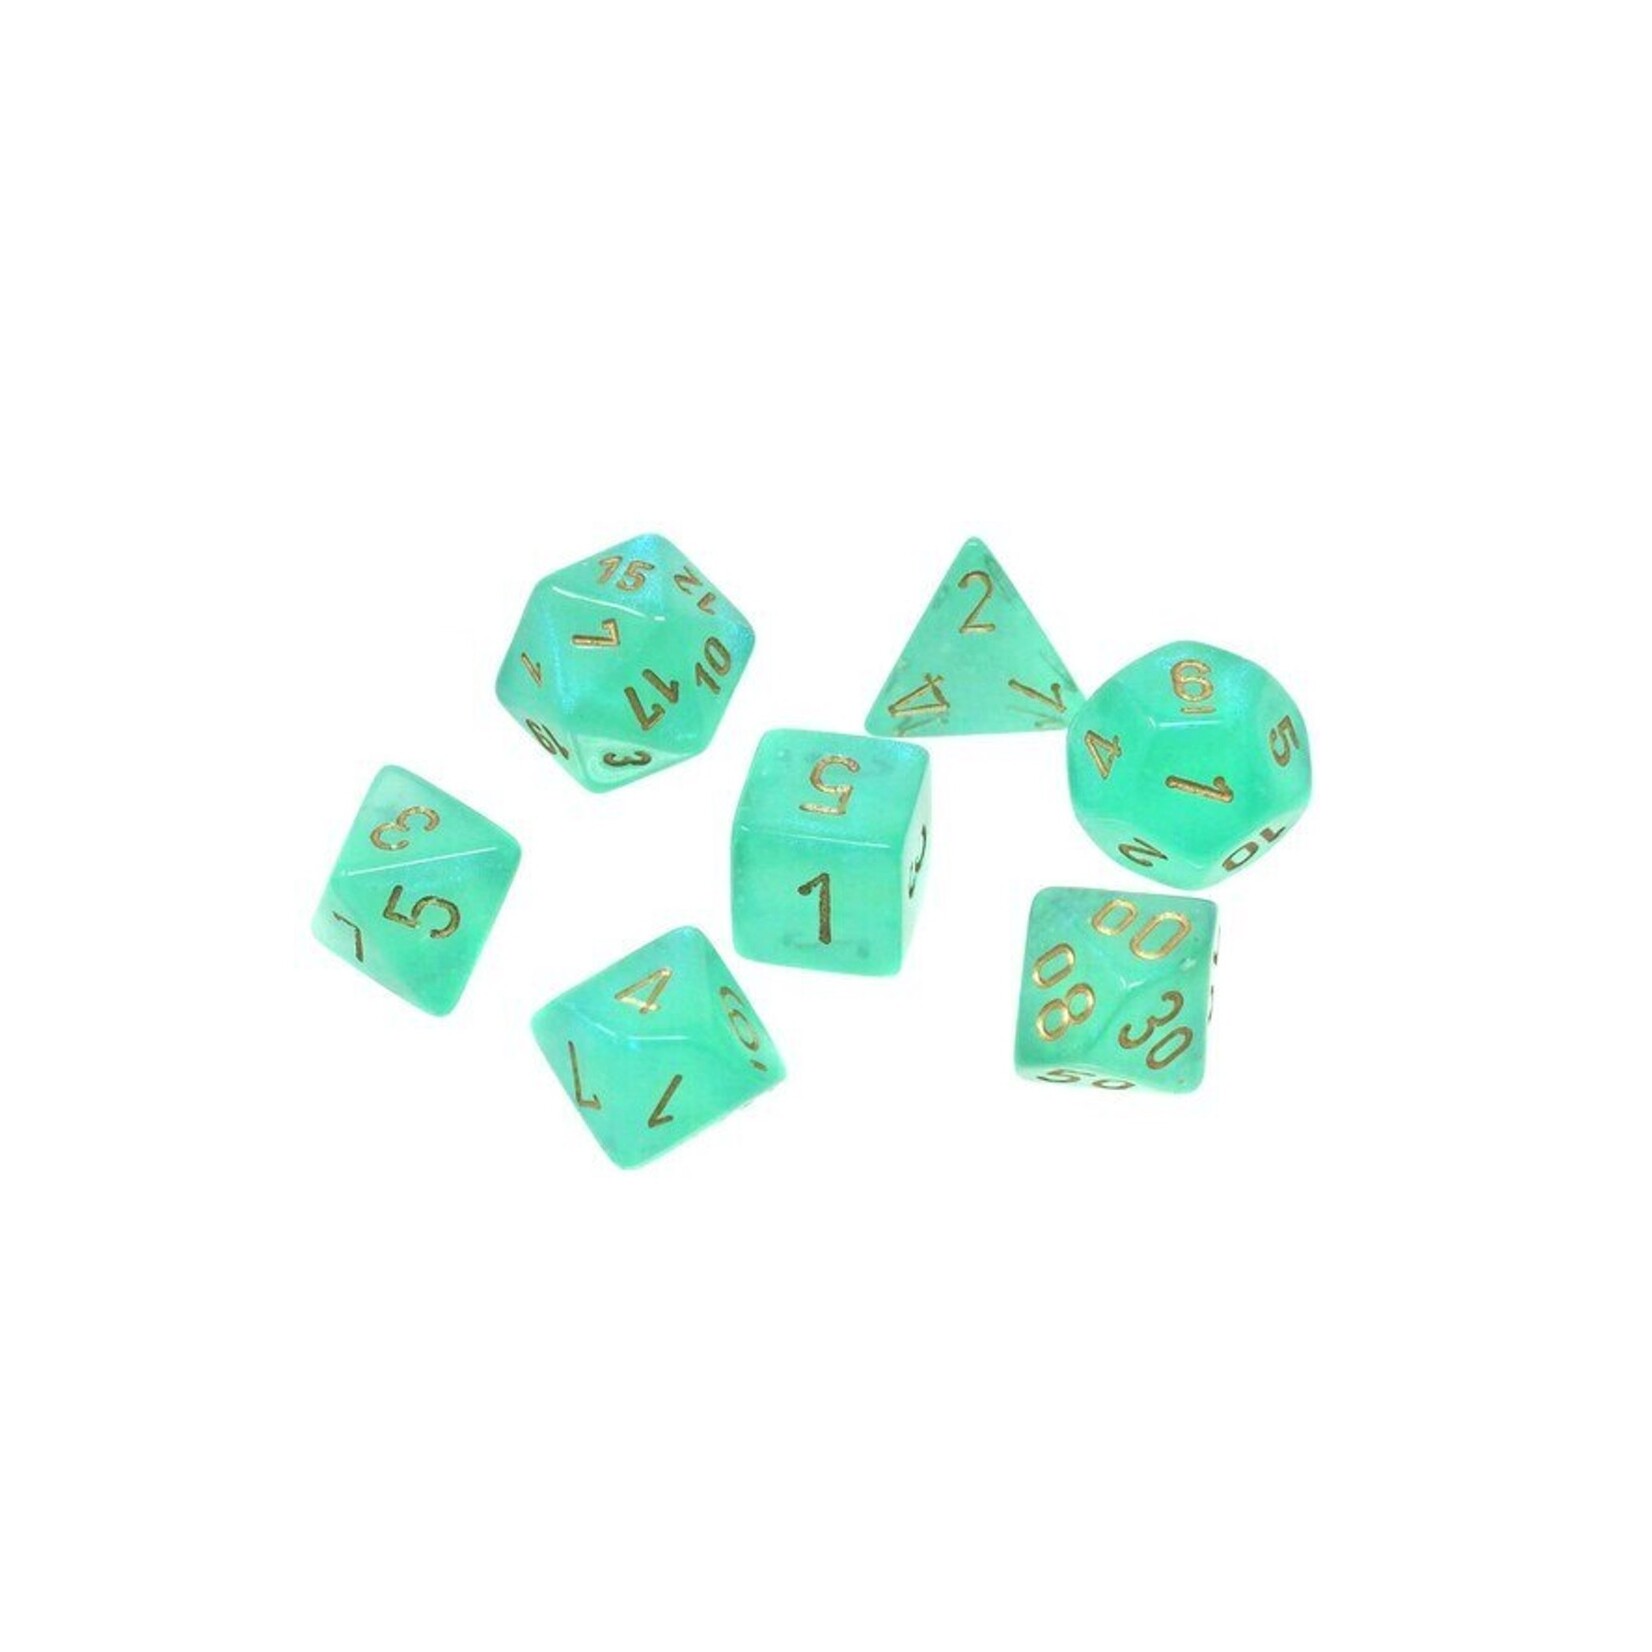 Chessex Ensemble de 7 dés polyédriques Borealis Luminary - Vert pâle avec chiffres dorés